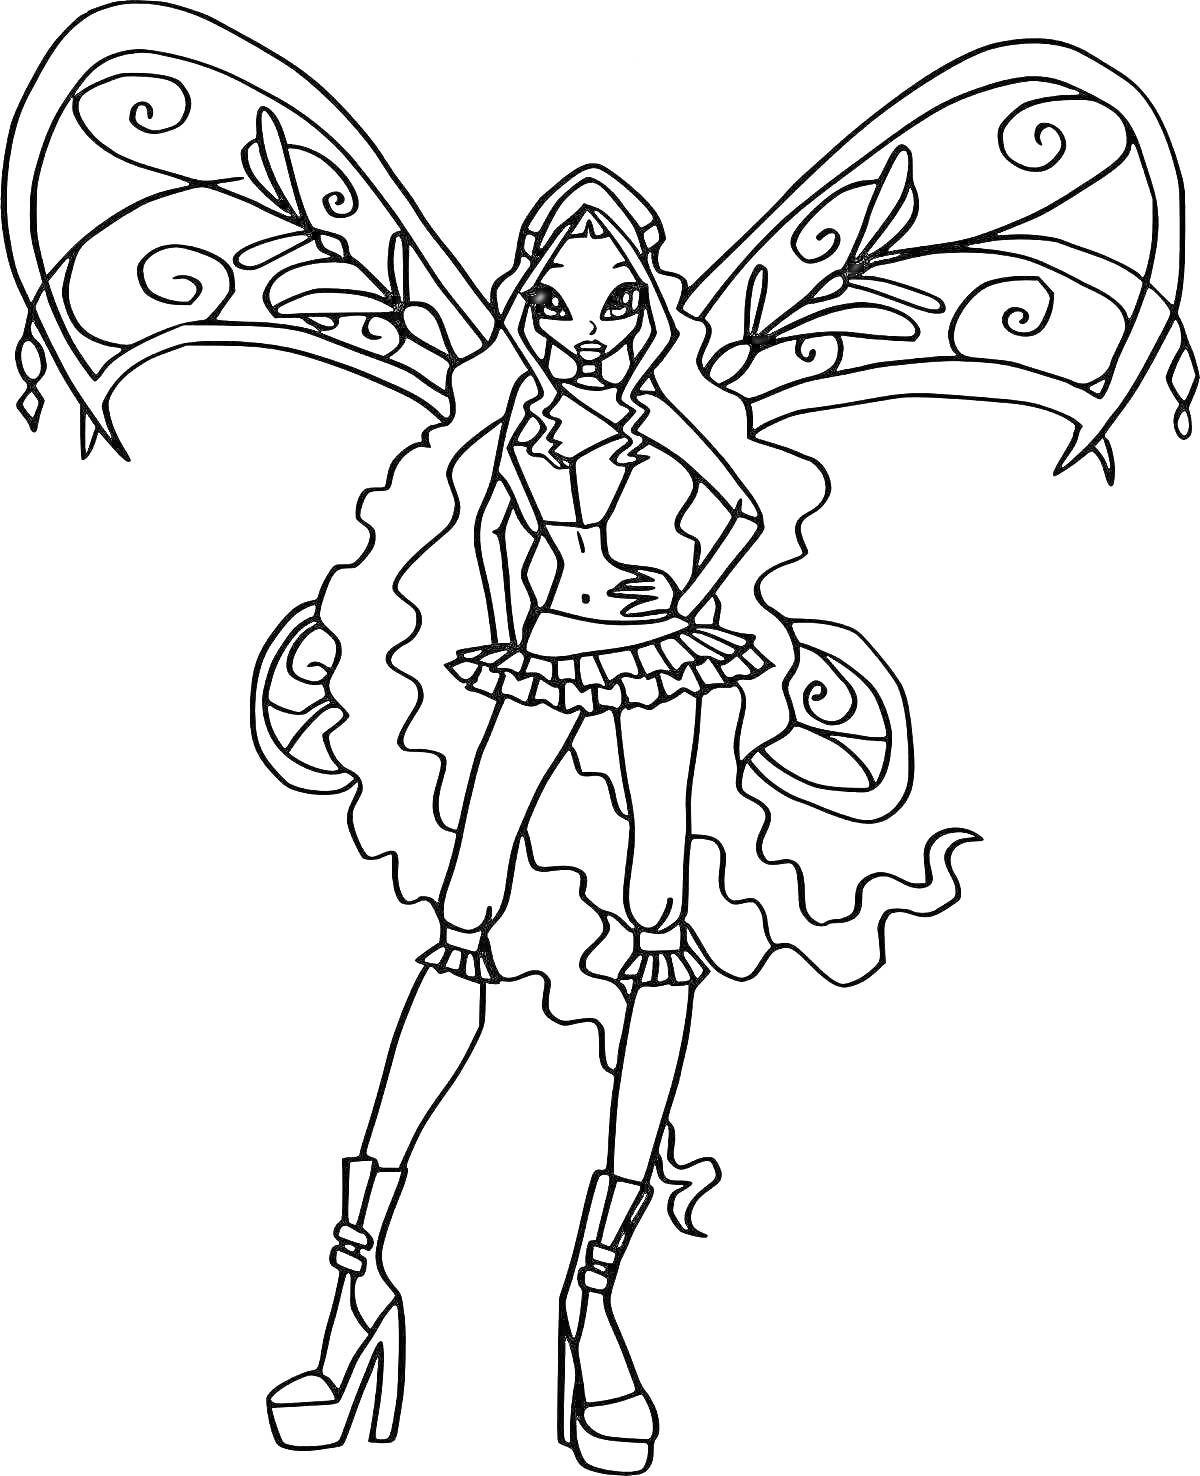 фея с длинными распущенными волосами в костюме с юбкой и высокими ботинками, с большими крыльями с узорами